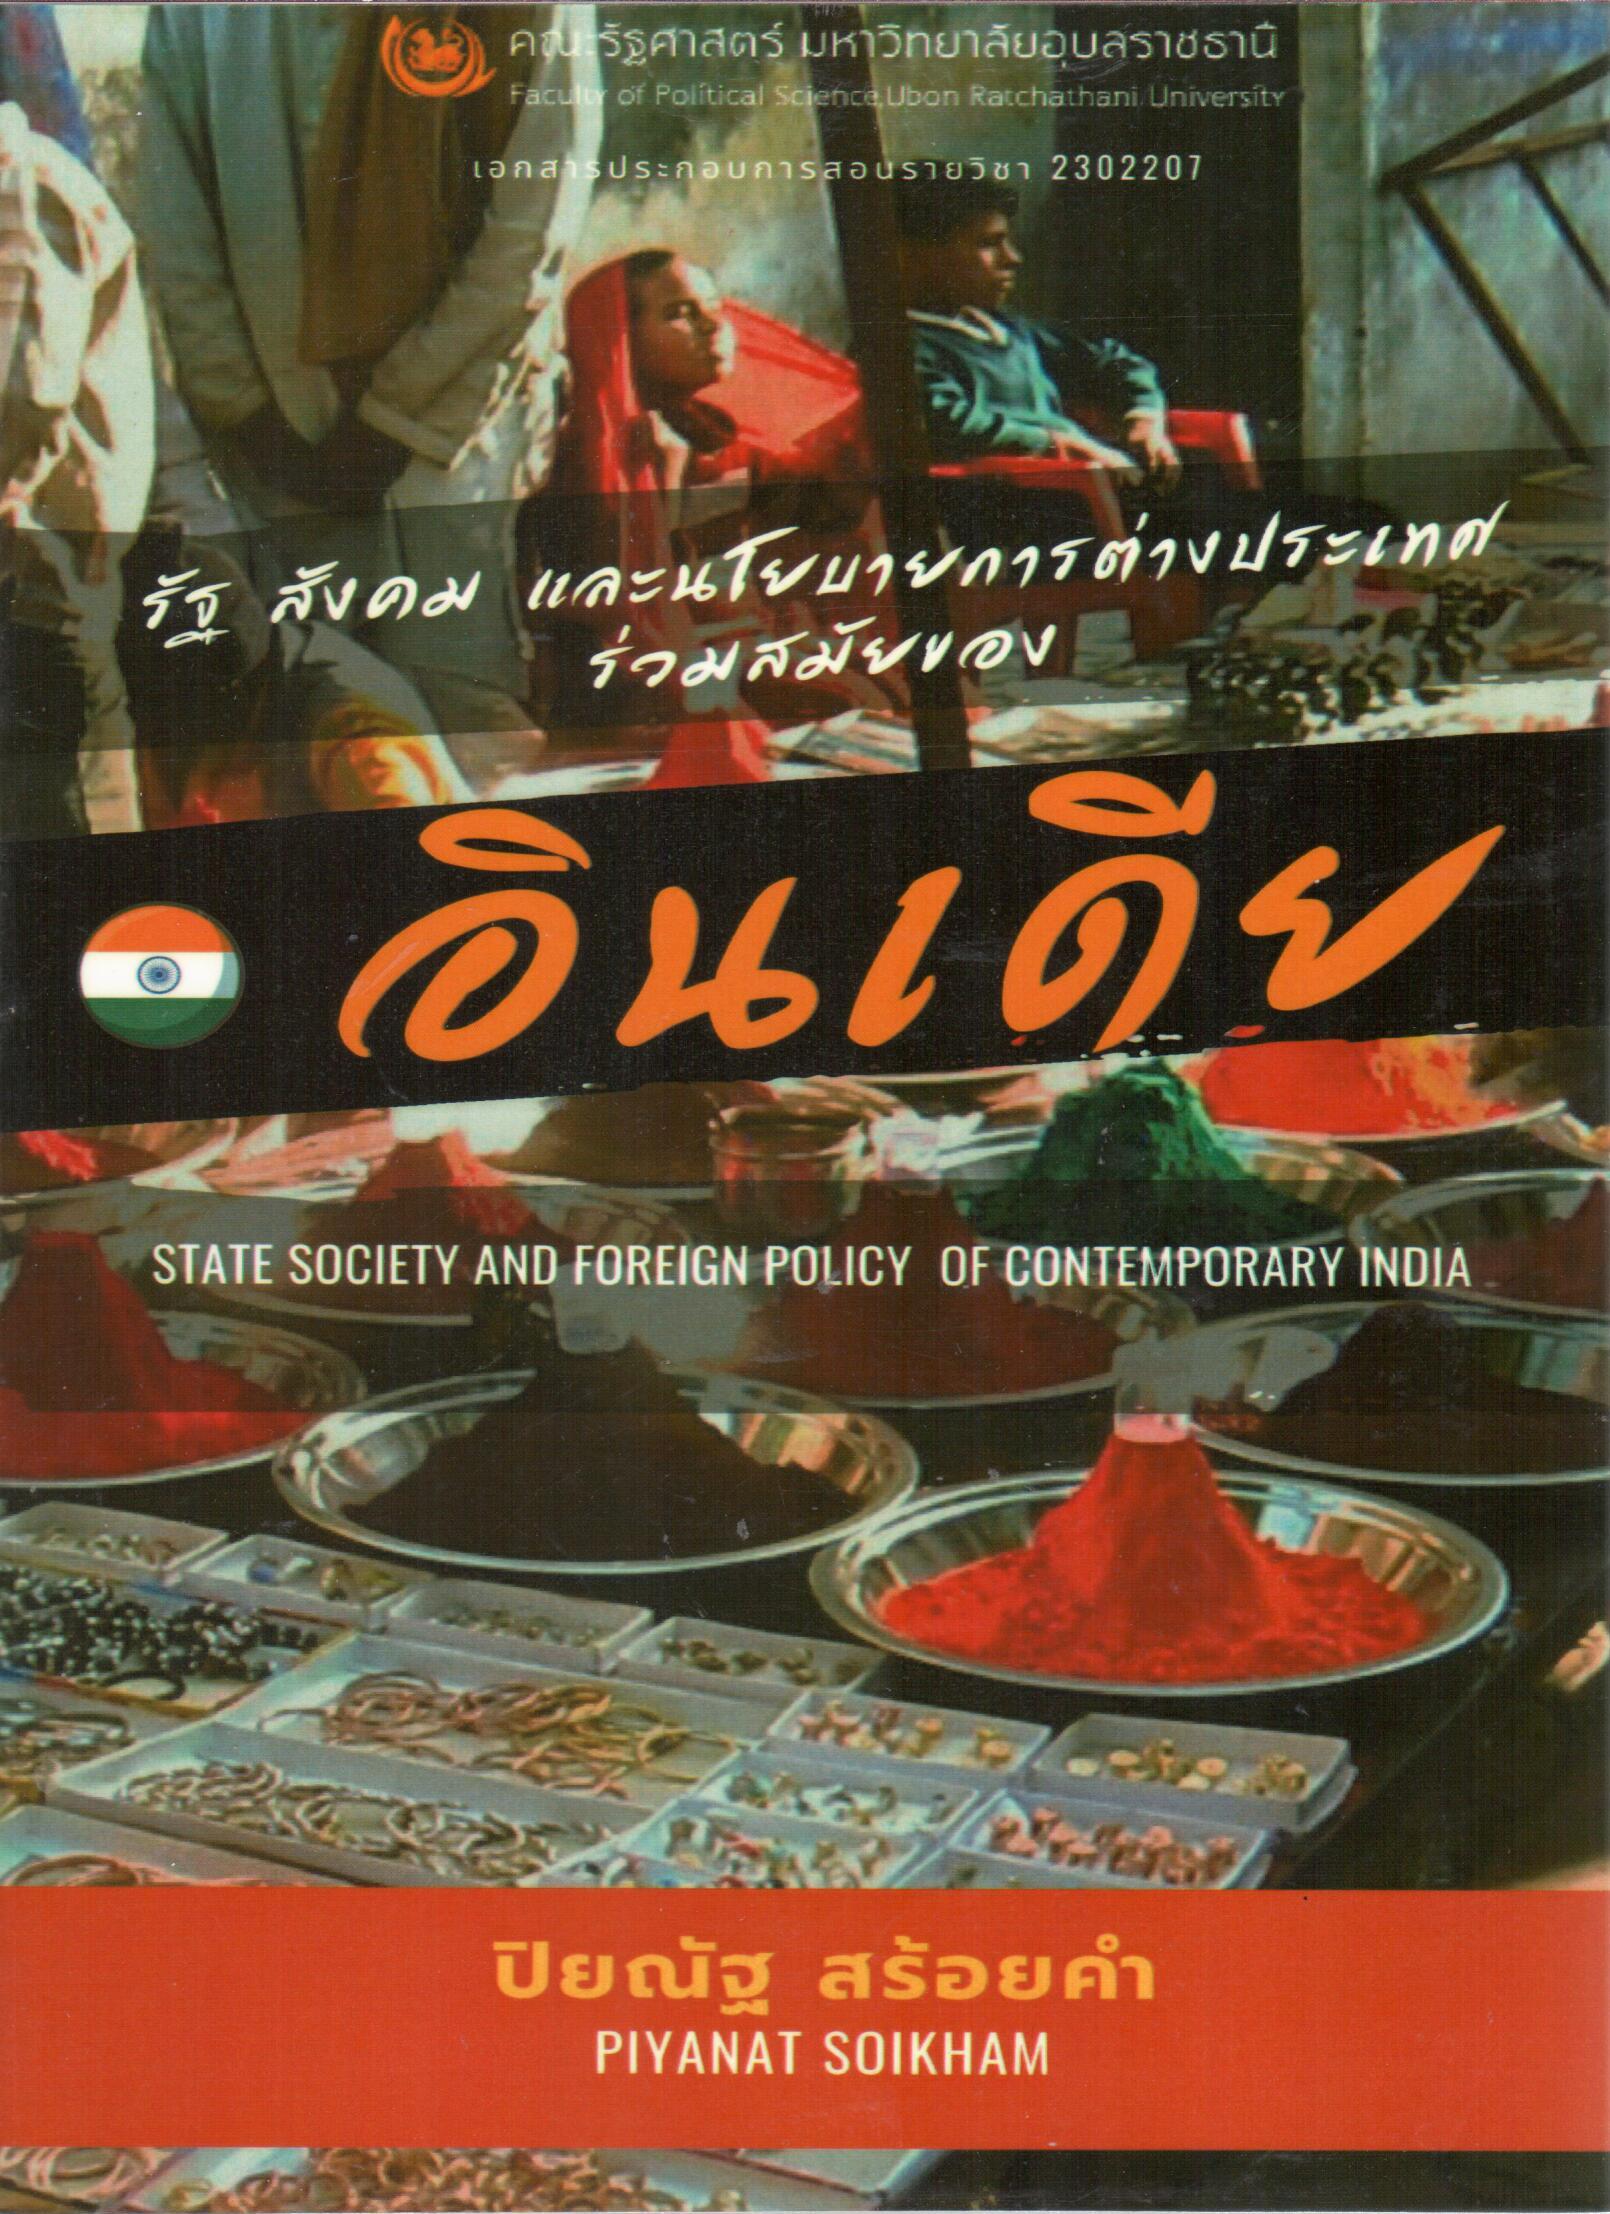 เอกสารประกอบการสอน รายวิชา 2302207 รัฐ สังคม และนโยบายการต่างประเทศร่วมสมัยขอลอินเดีย = State society and foreign policy of contemporary India